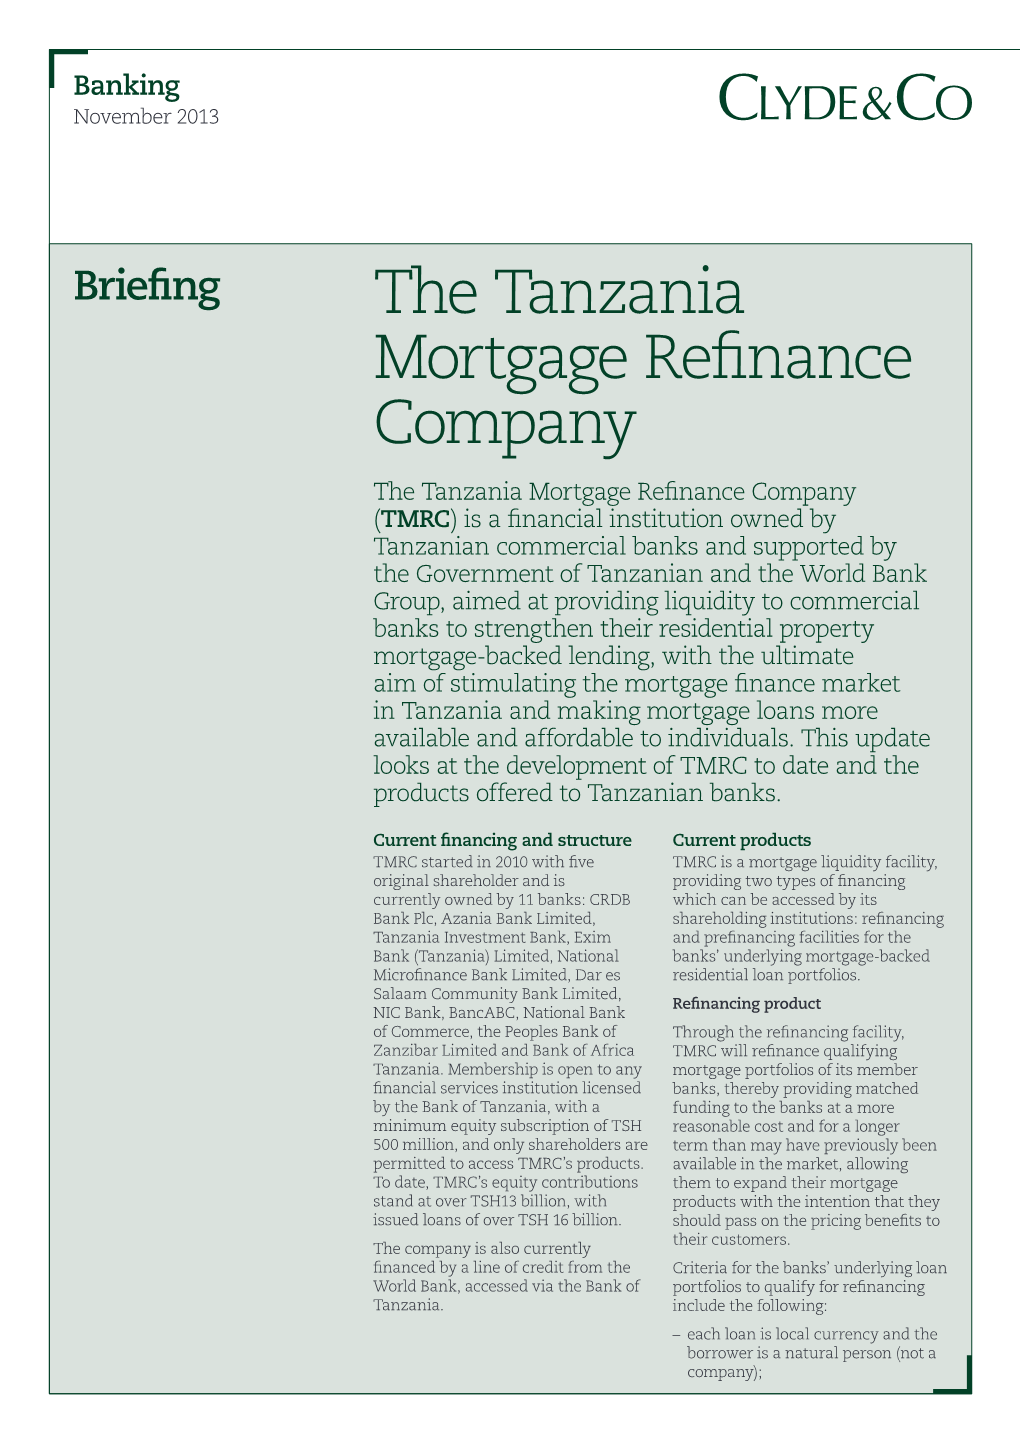 The Tanzania Mortgage Refinance Company